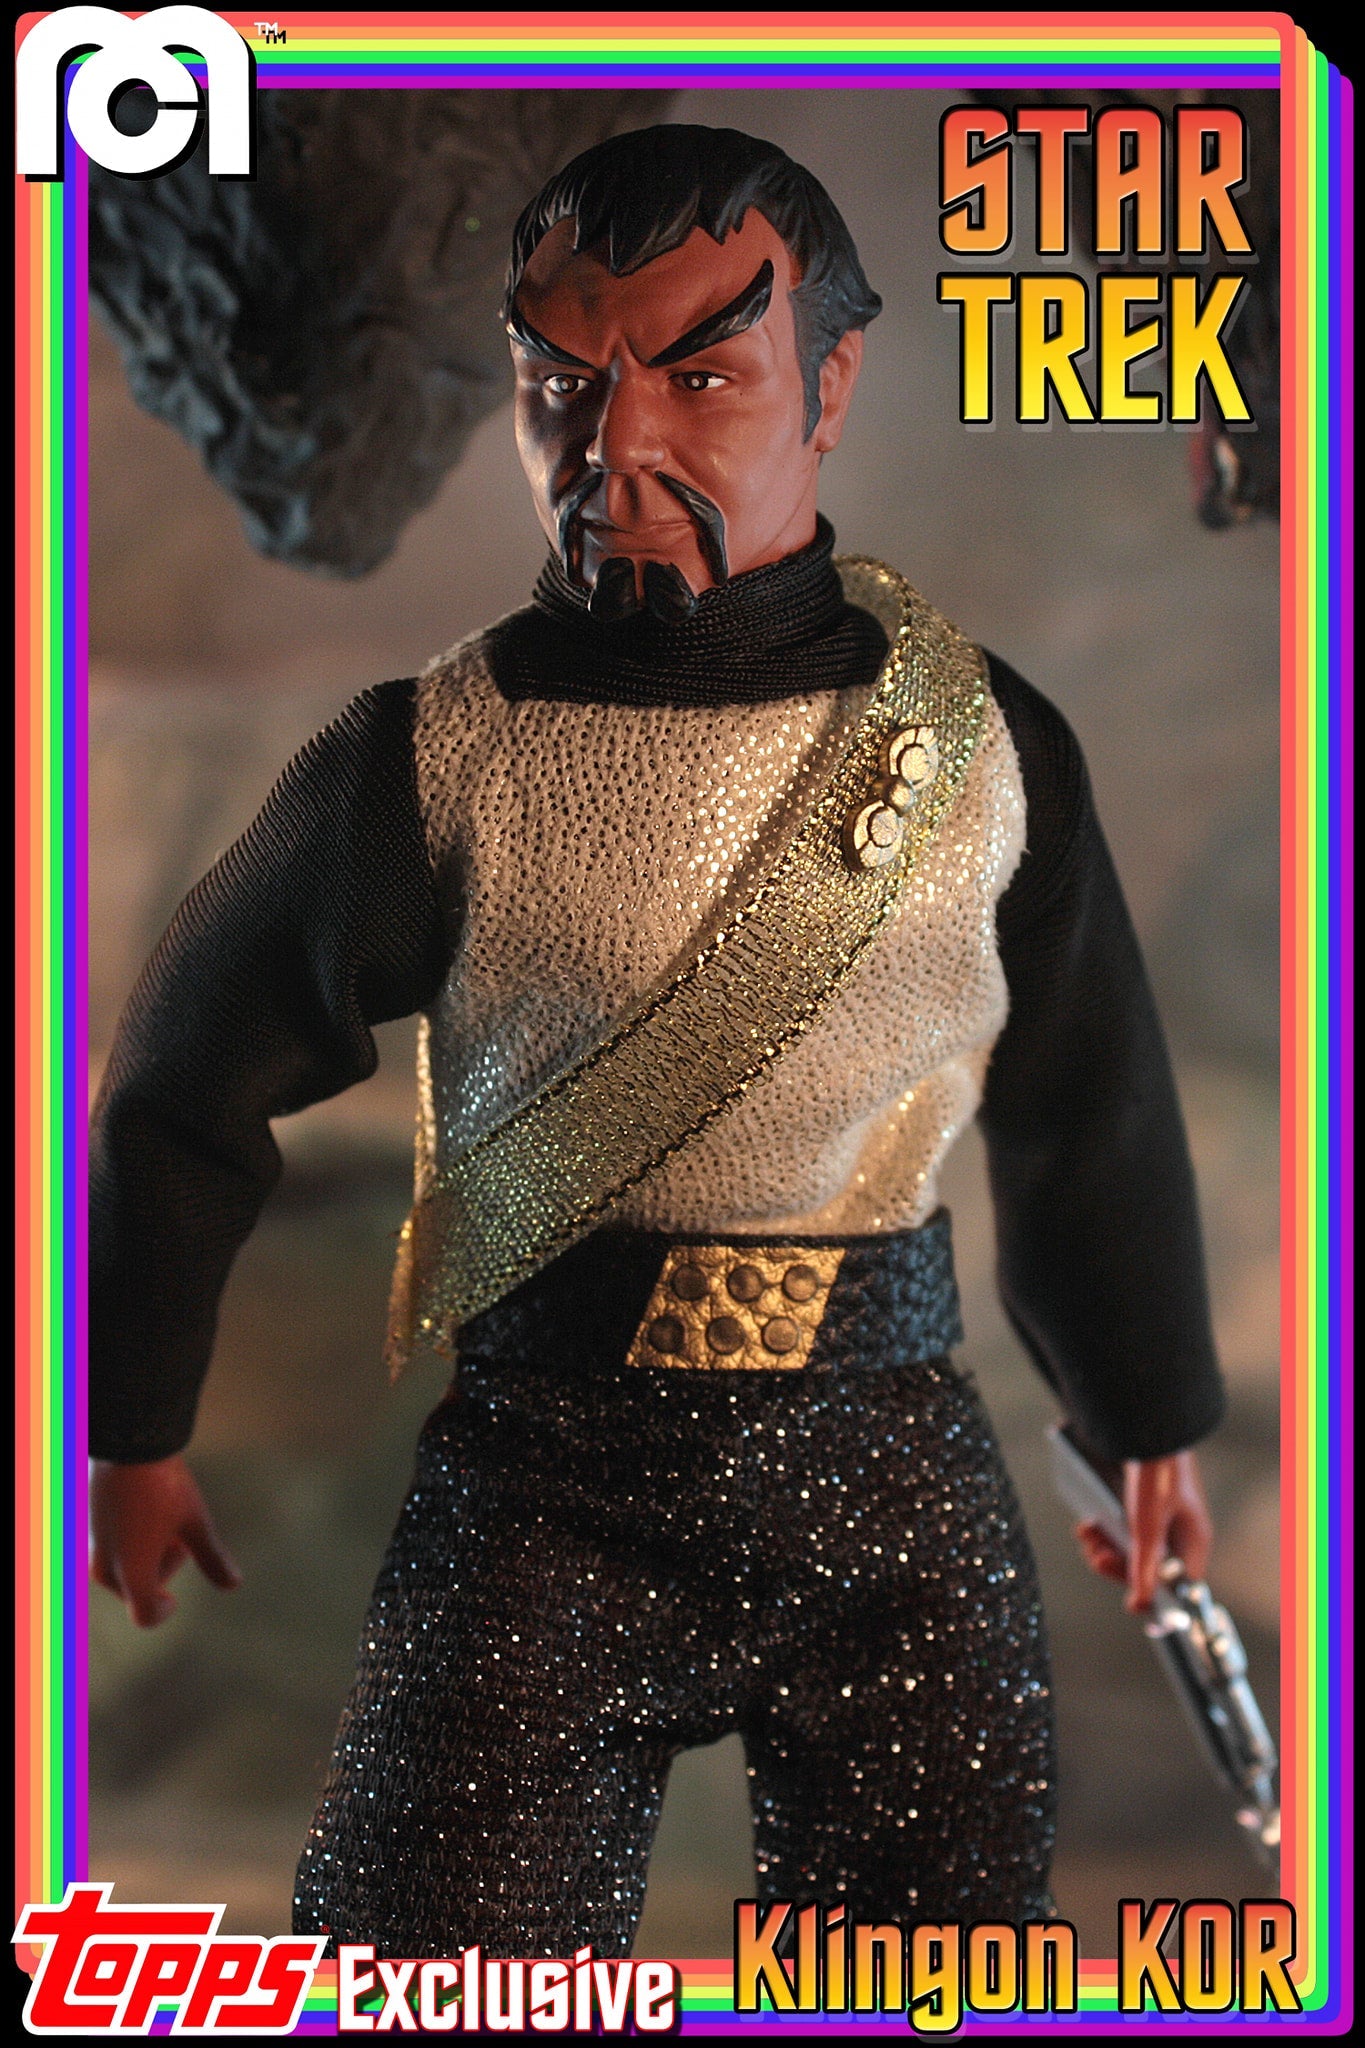 Damaged Package Mego Topps X - Star Trek - Kor the Klingon 8" Action Figure